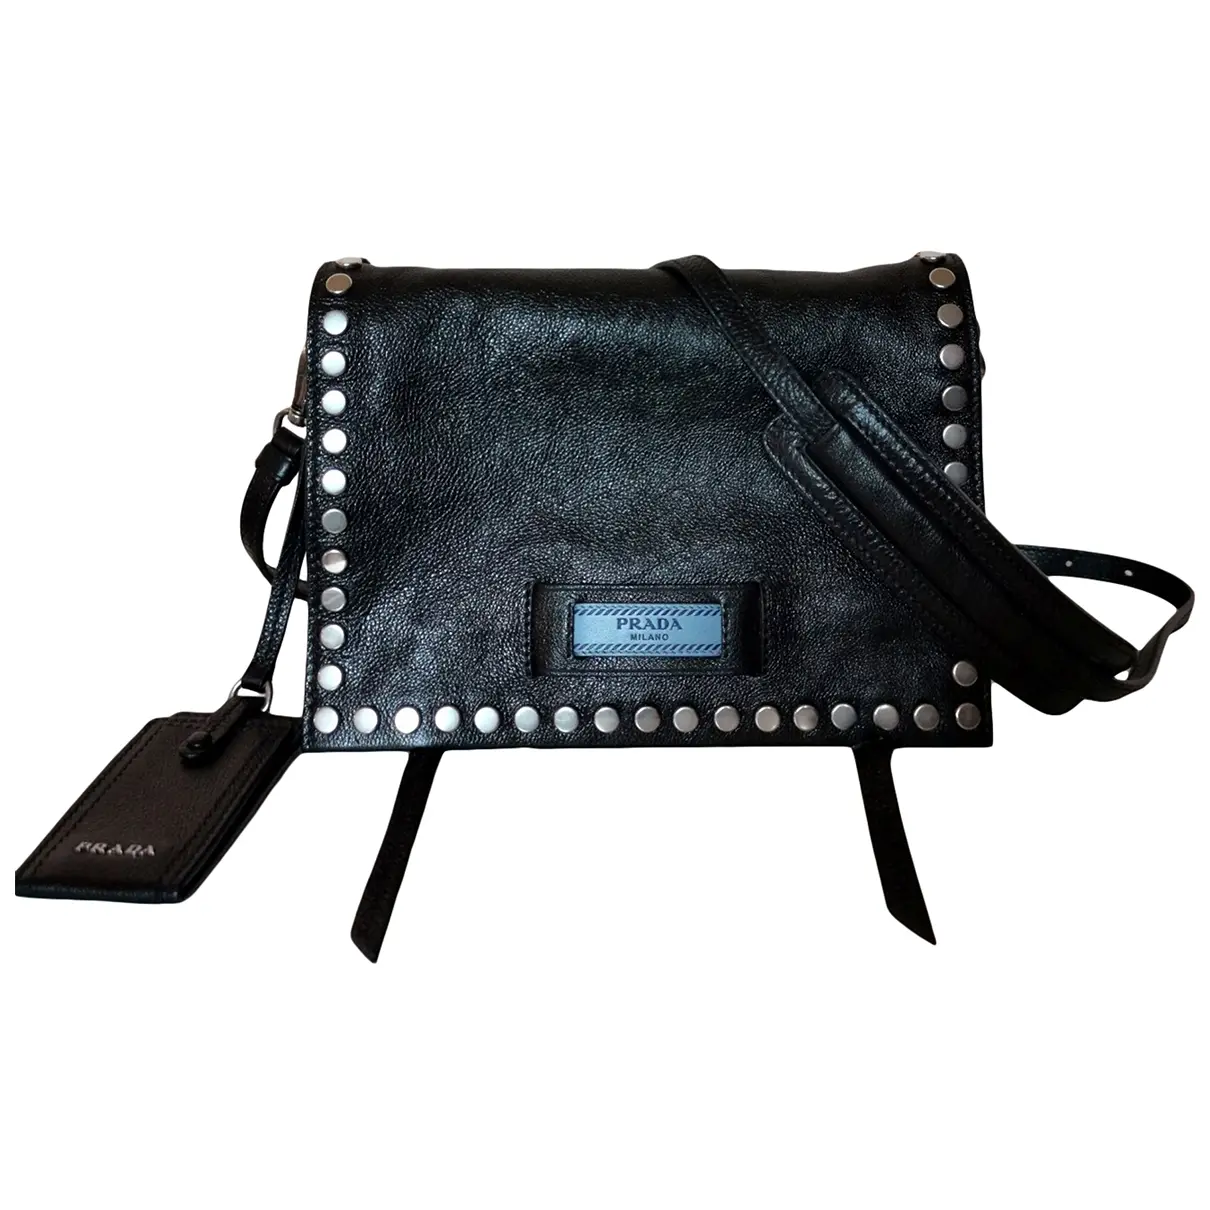 Etiquette leather crossbody bag Prada